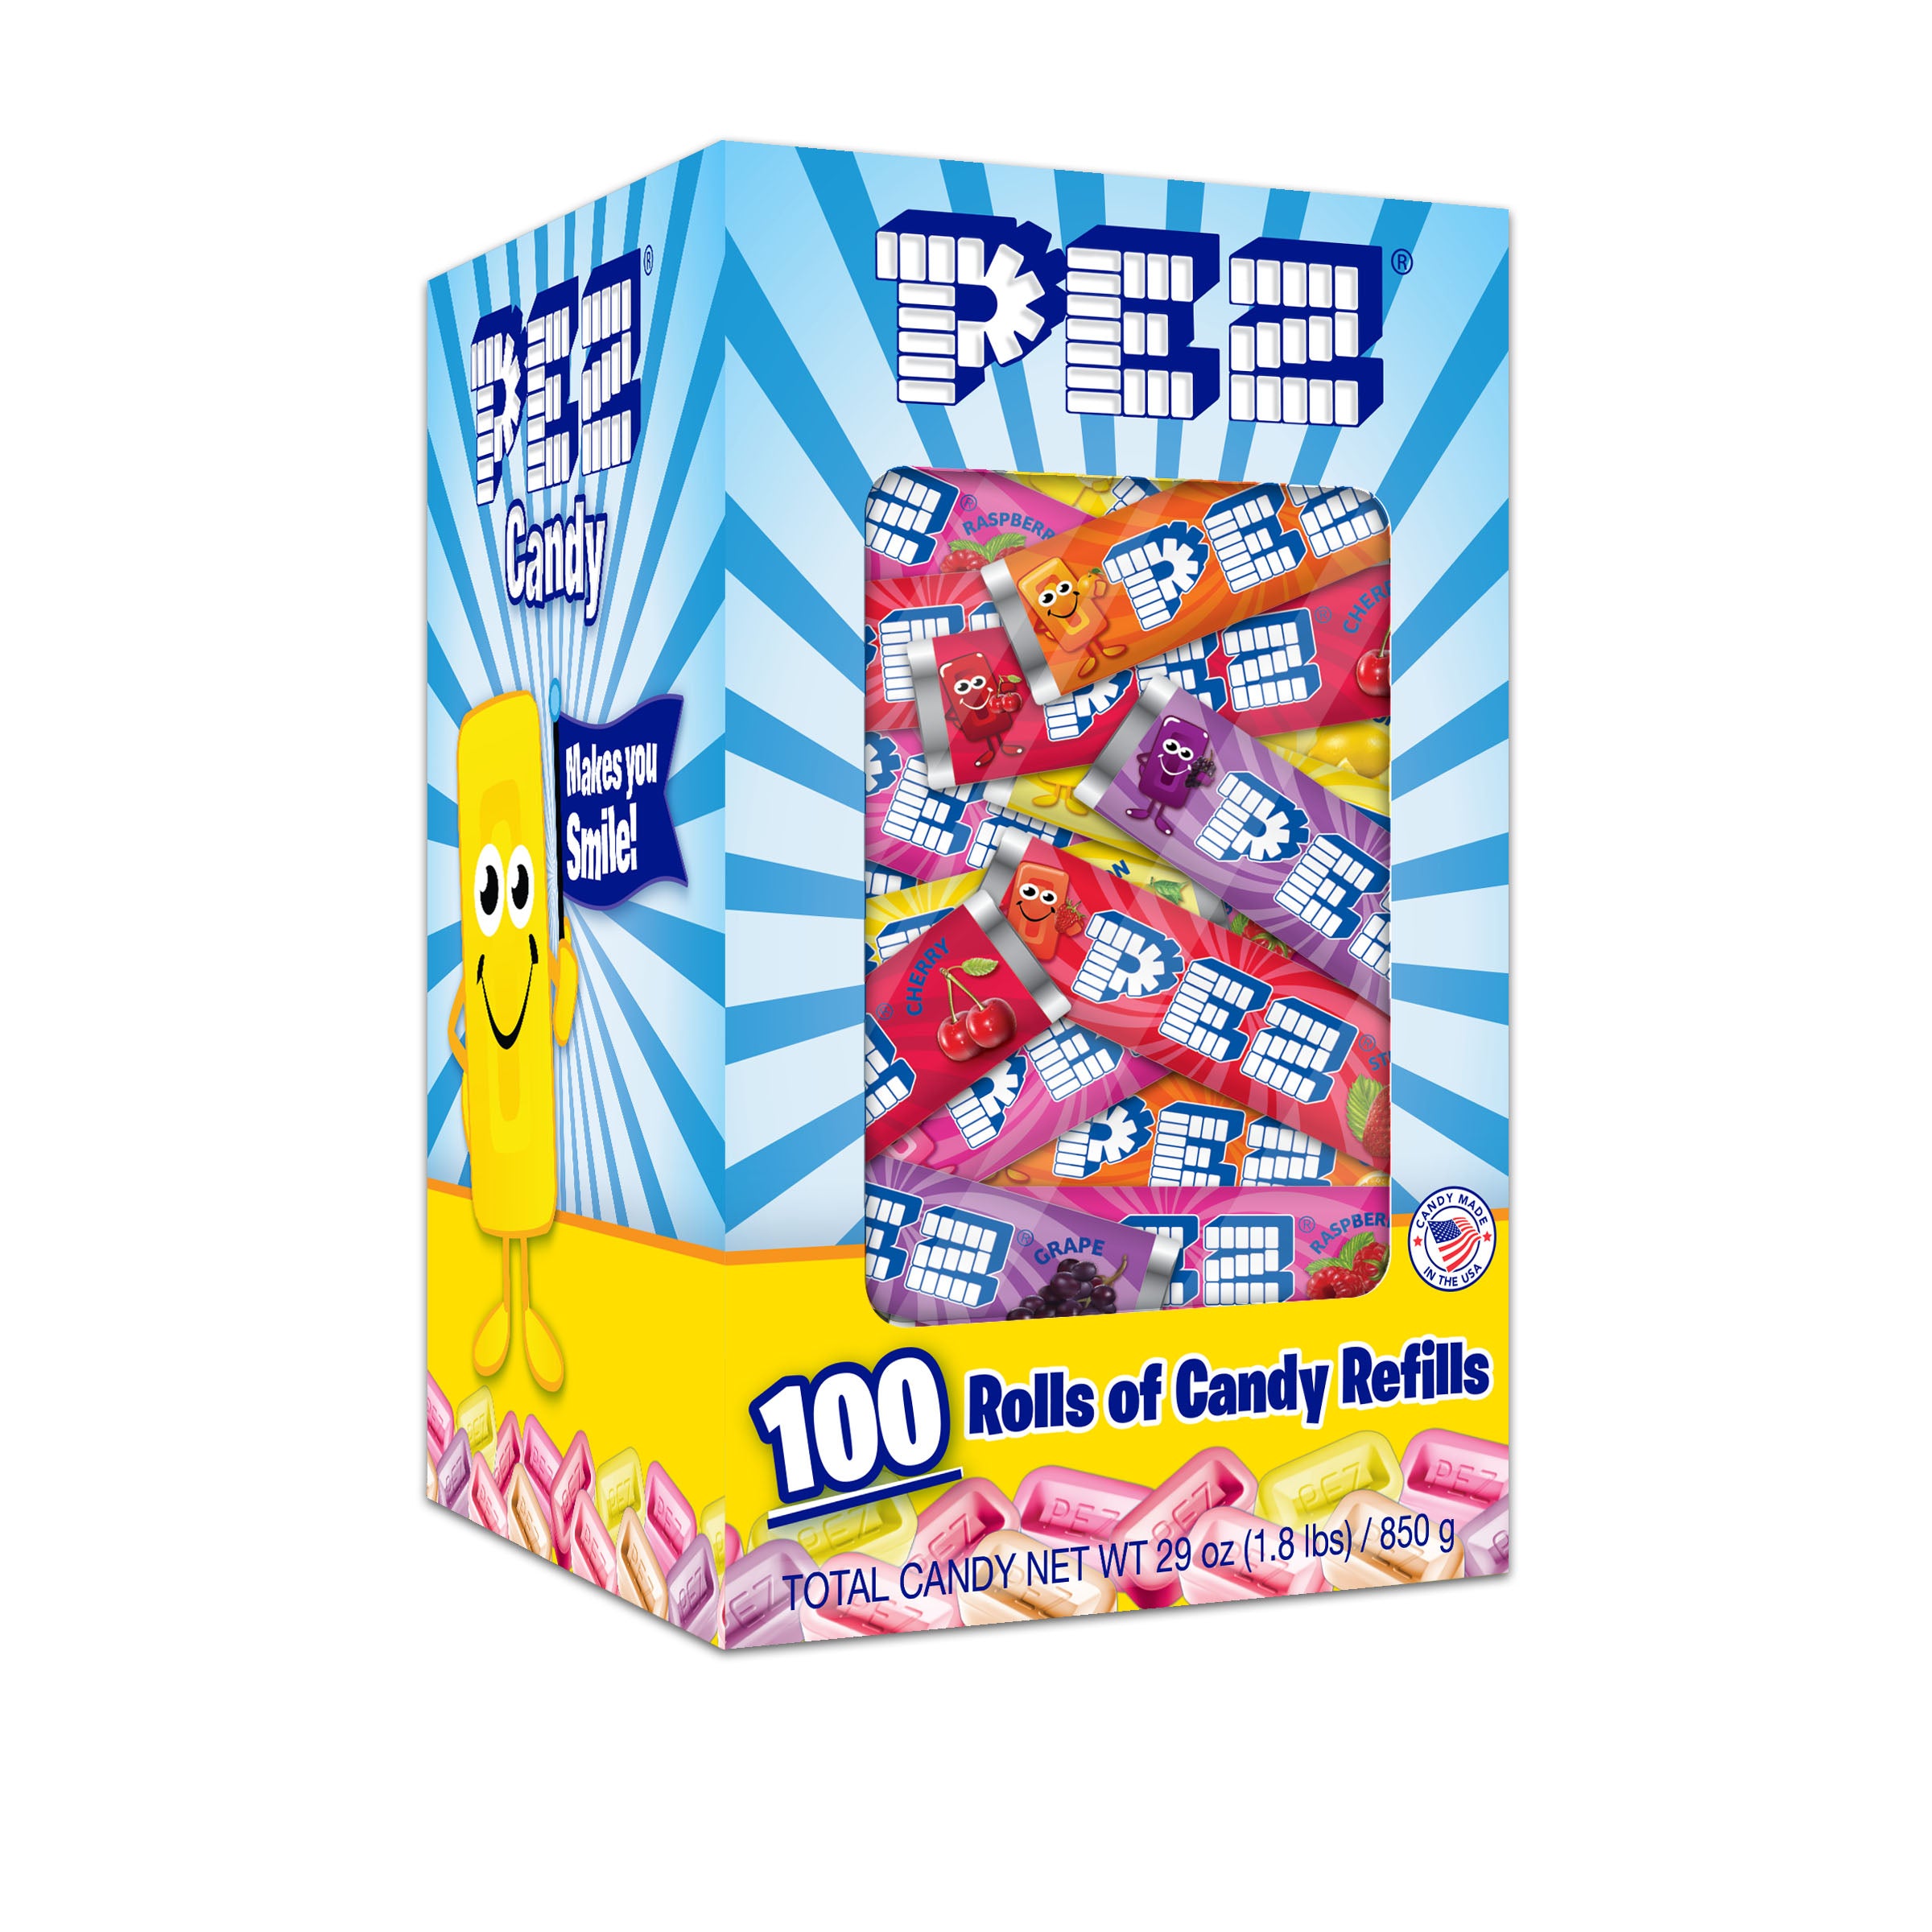 Assorted Fruit Mixed Pack PEZ Candy Refills Bulk Box - 100 rolls